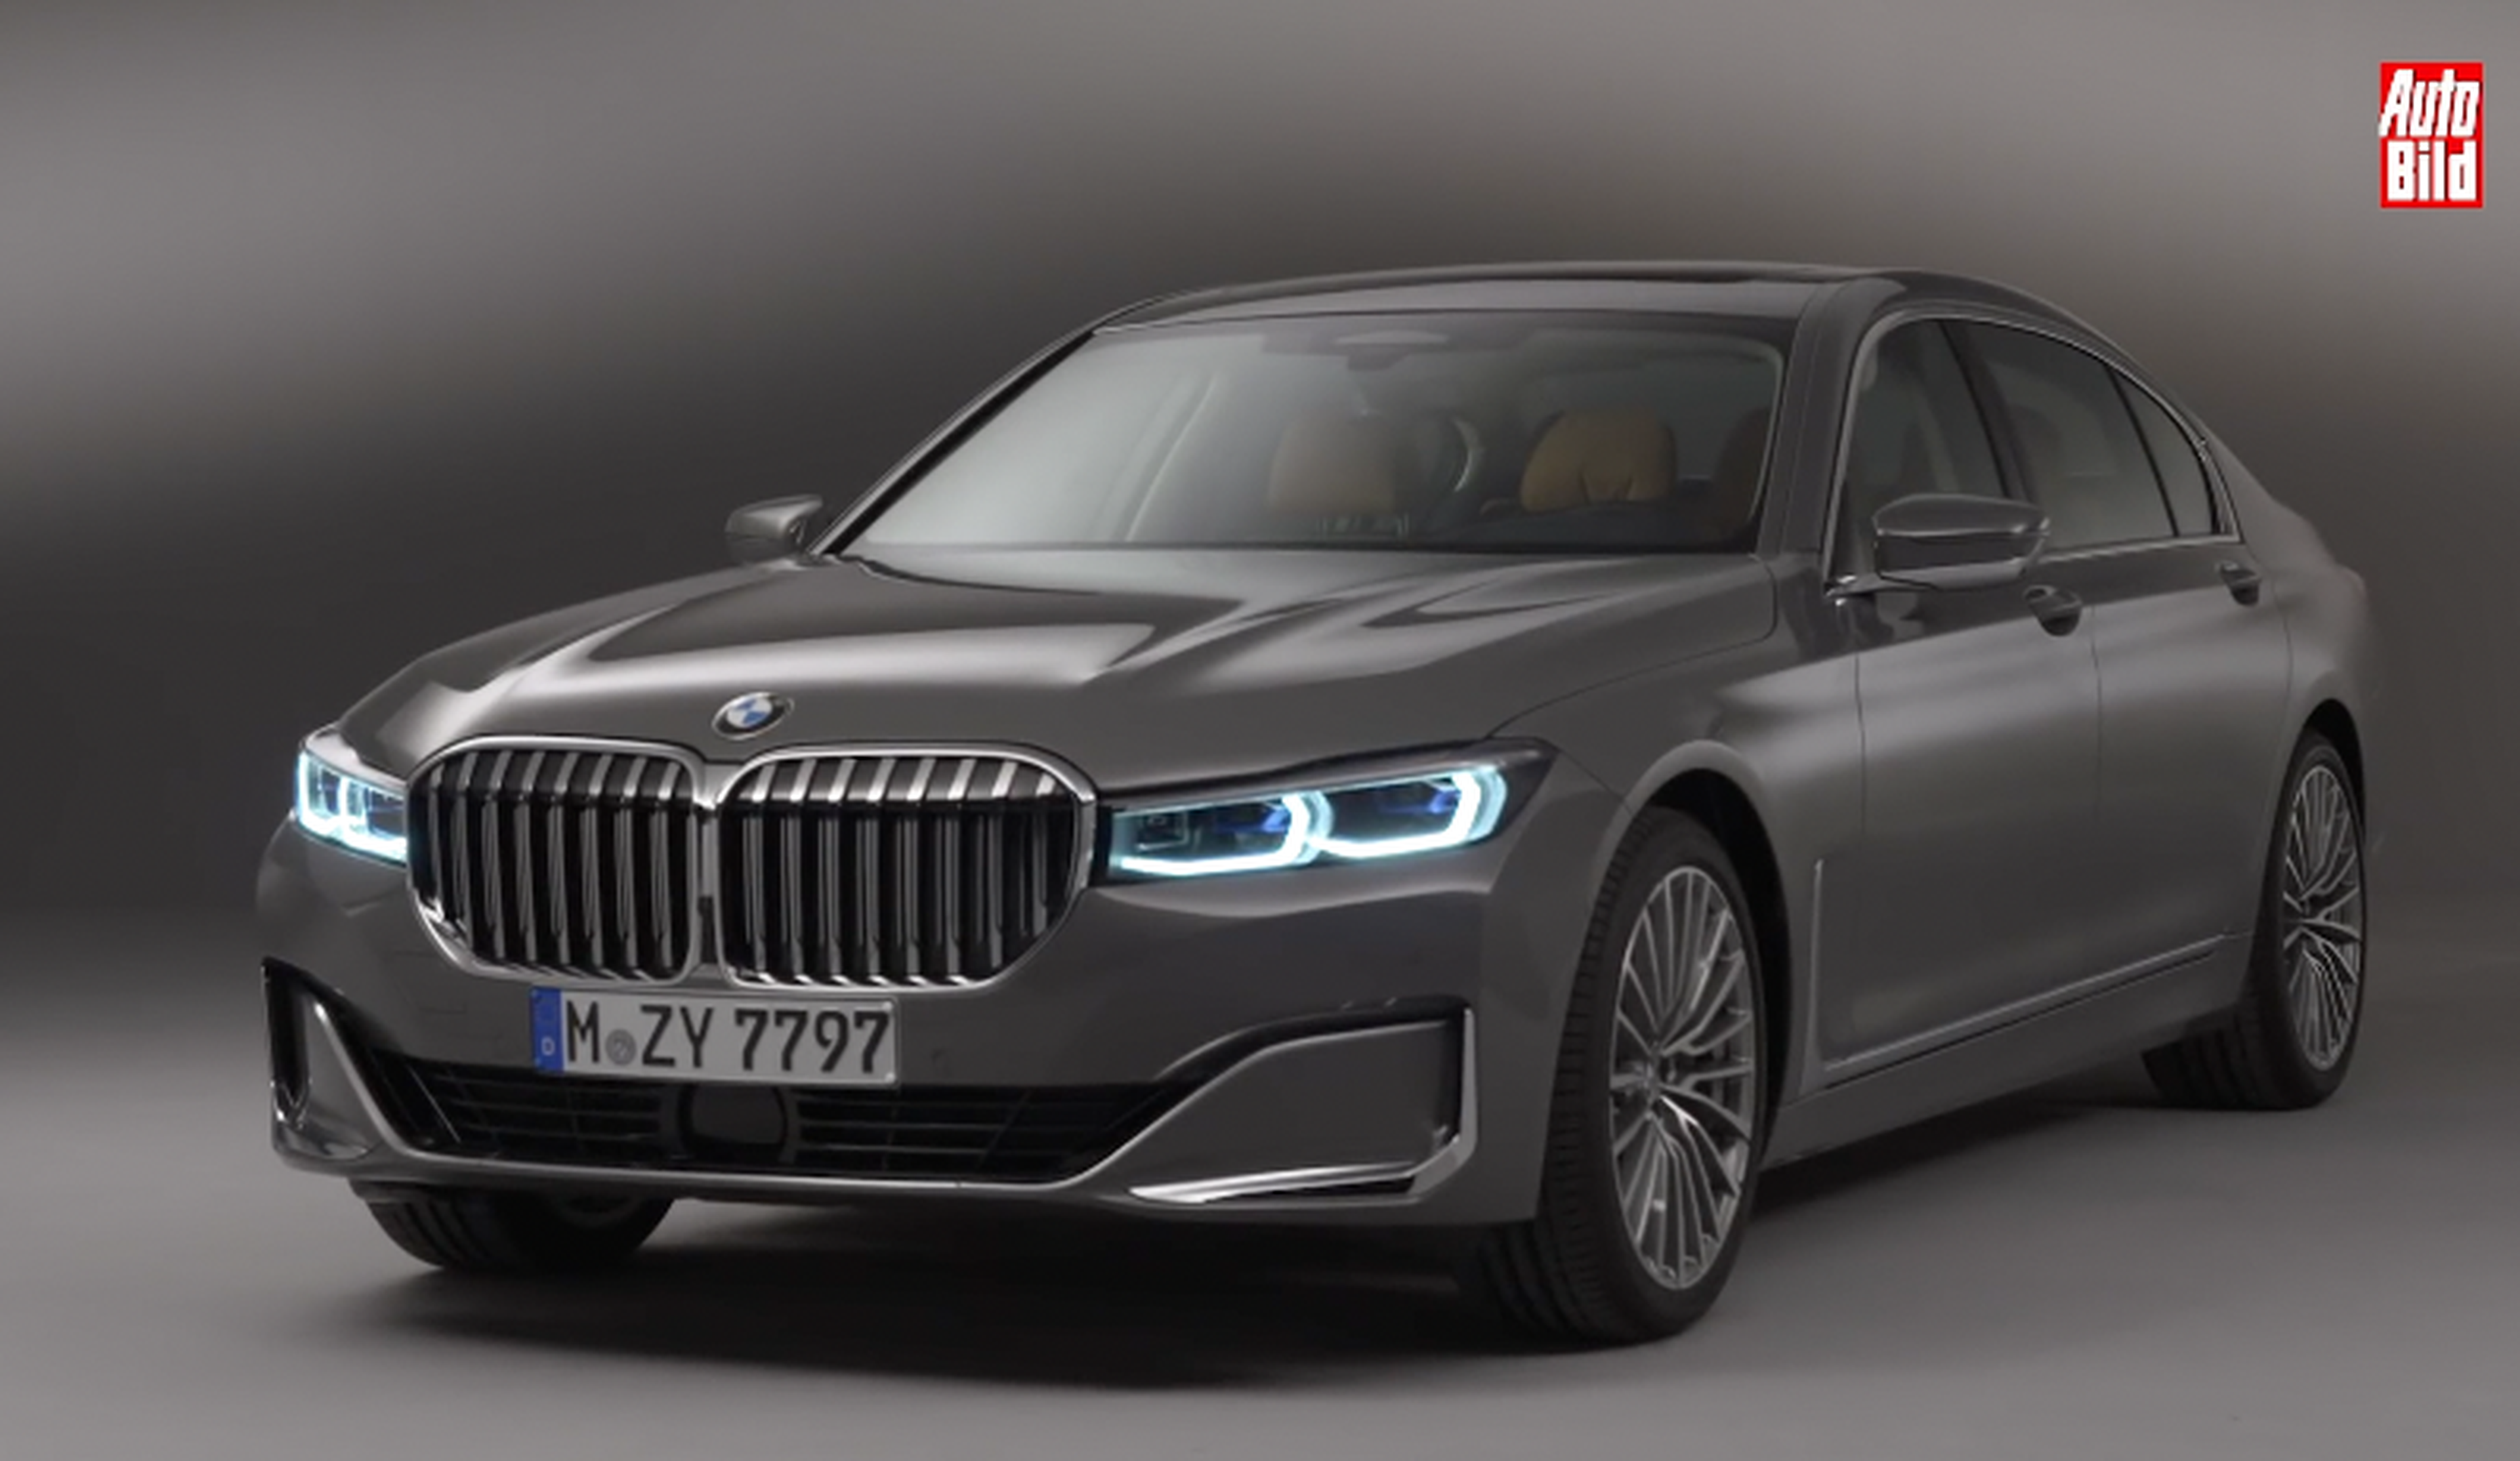 VÍDEO: Así es el nuevo BMW Serie 7 2019, la berlina que todo empresario querría tener